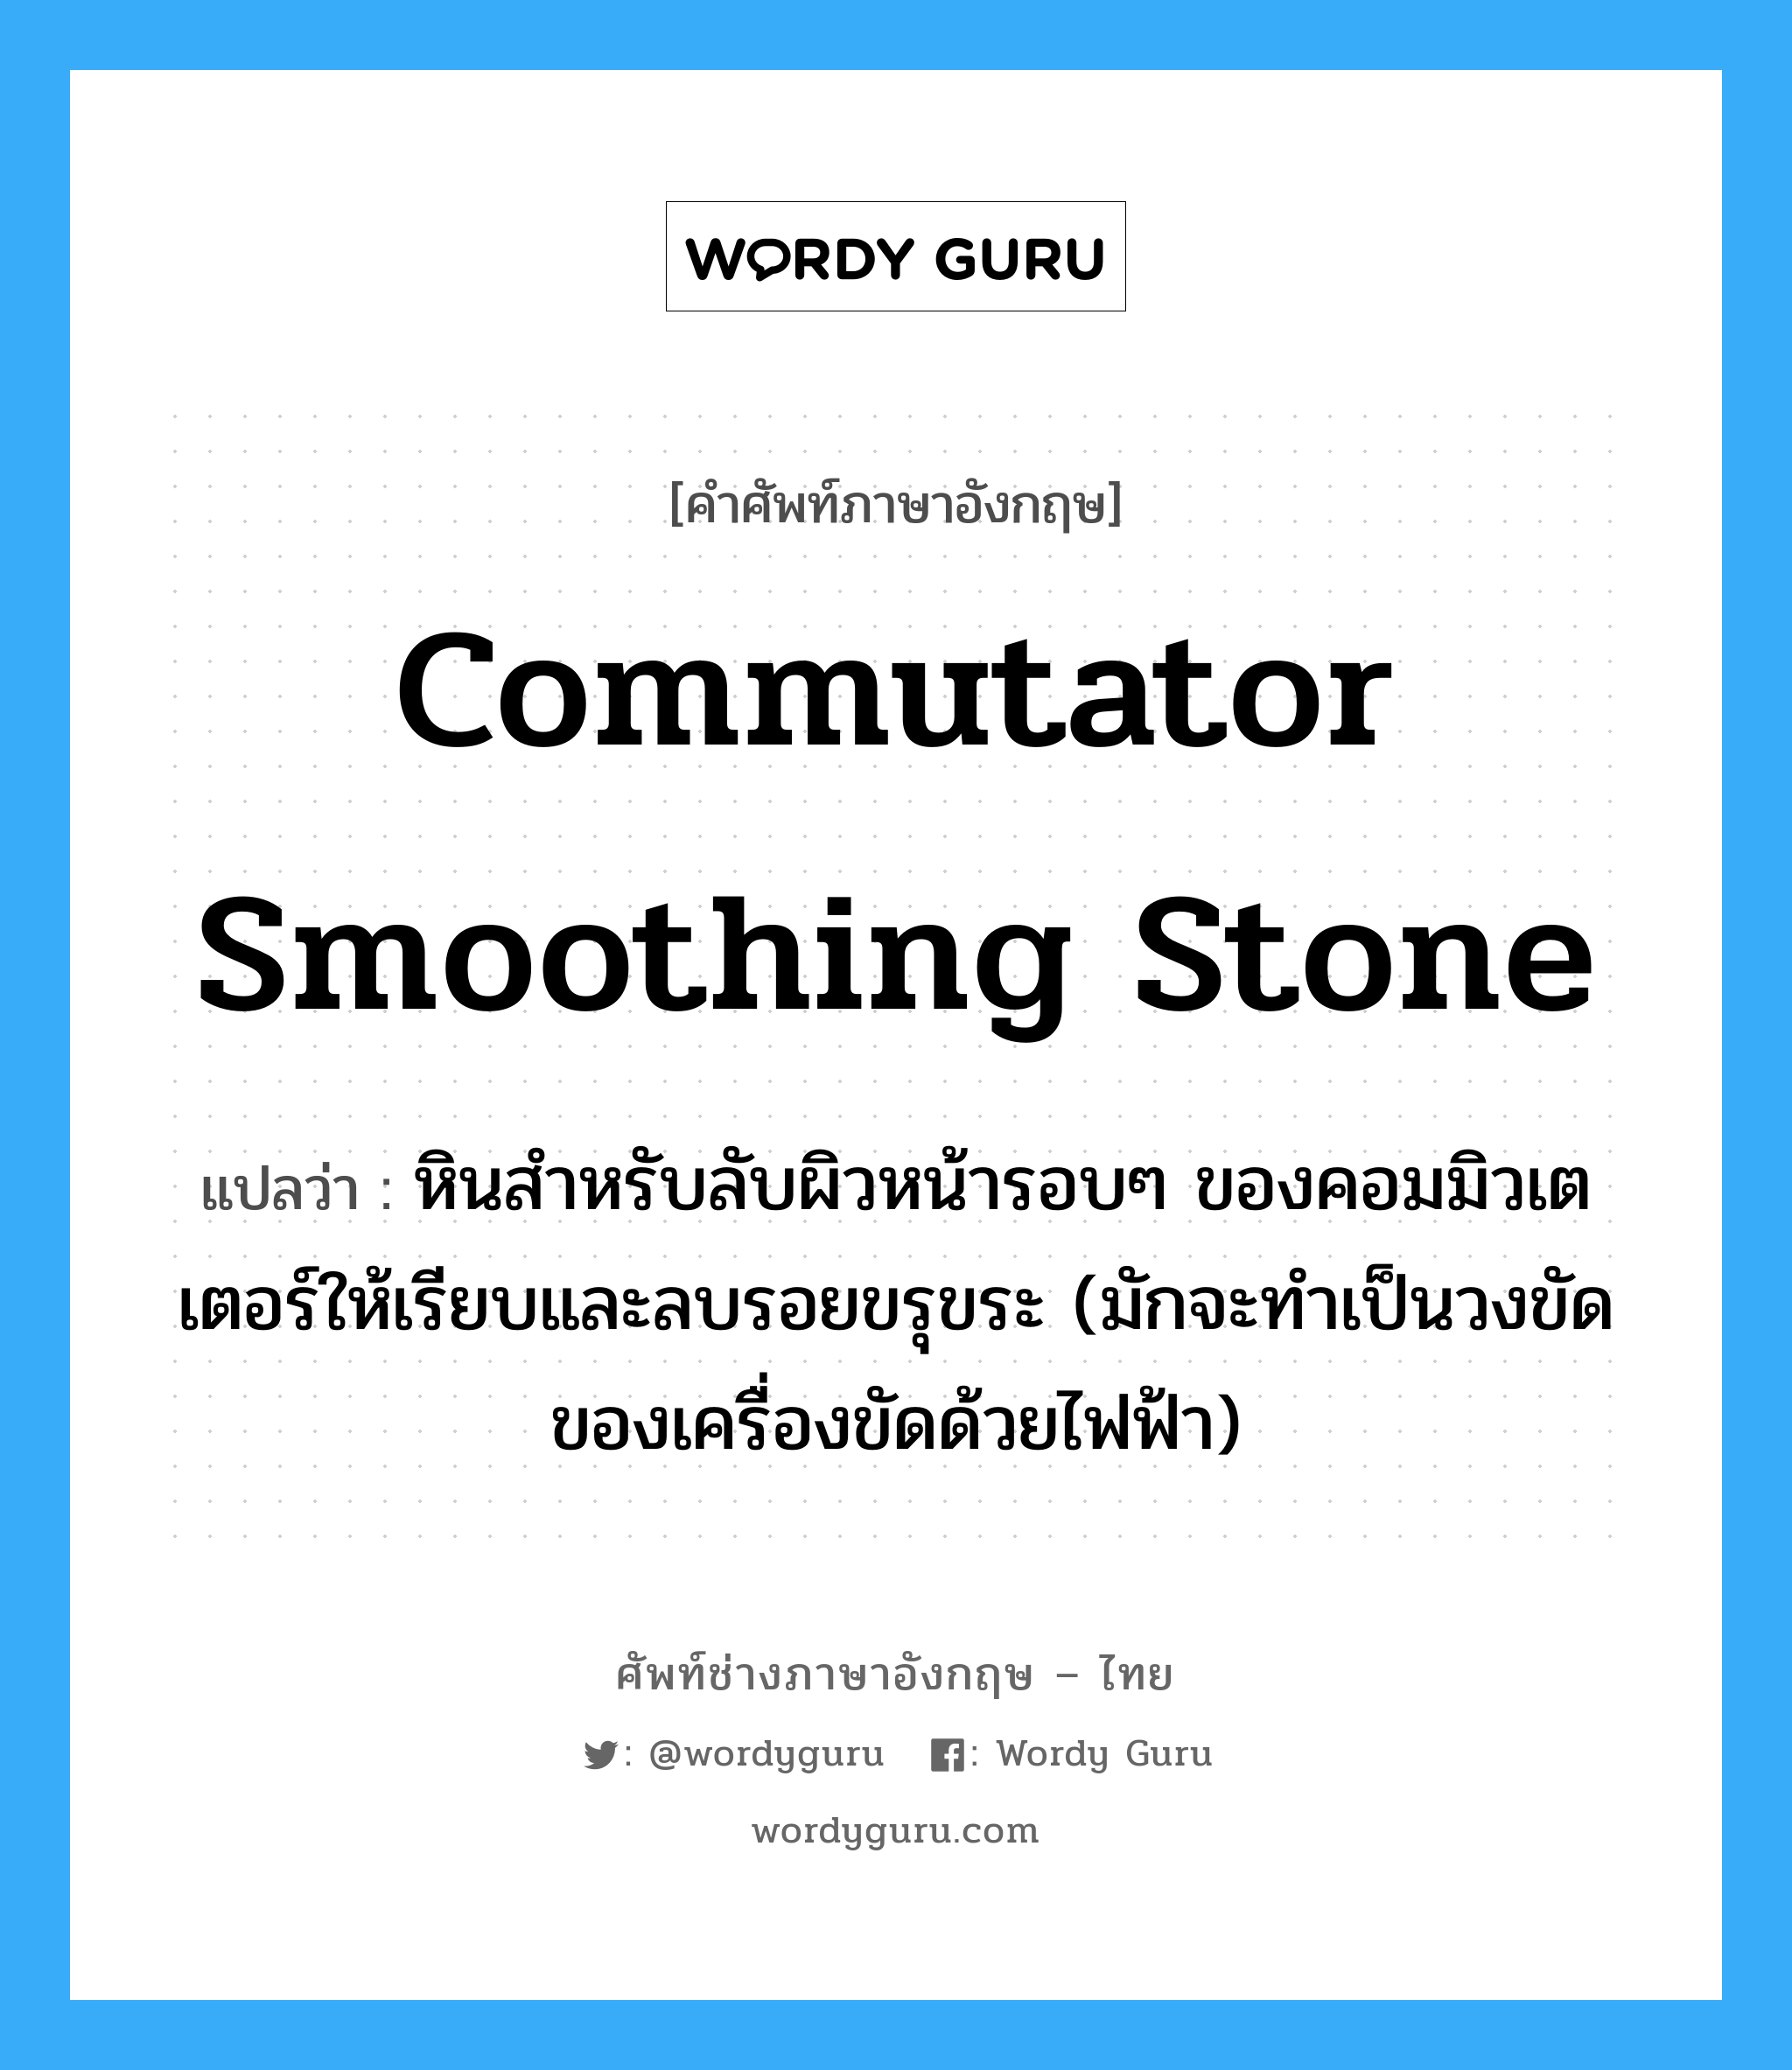 commutator smoothing stone แปลว่า?, คำศัพท์ช่างภาษาอังกฤษ - ไทย commutator smoothing stone คำศัพท์ภาษาอังกฤษ commutator smoothing stone แปลว่า หินสำหรับลับผิวหน้ารอบๆ ของคอมมิวเตเตอร์ให้เรียบและลบรอยขรุขระ (มักจะทำเป็นวงขัดของเครื่องขัดด้วยไฟฟ้า)